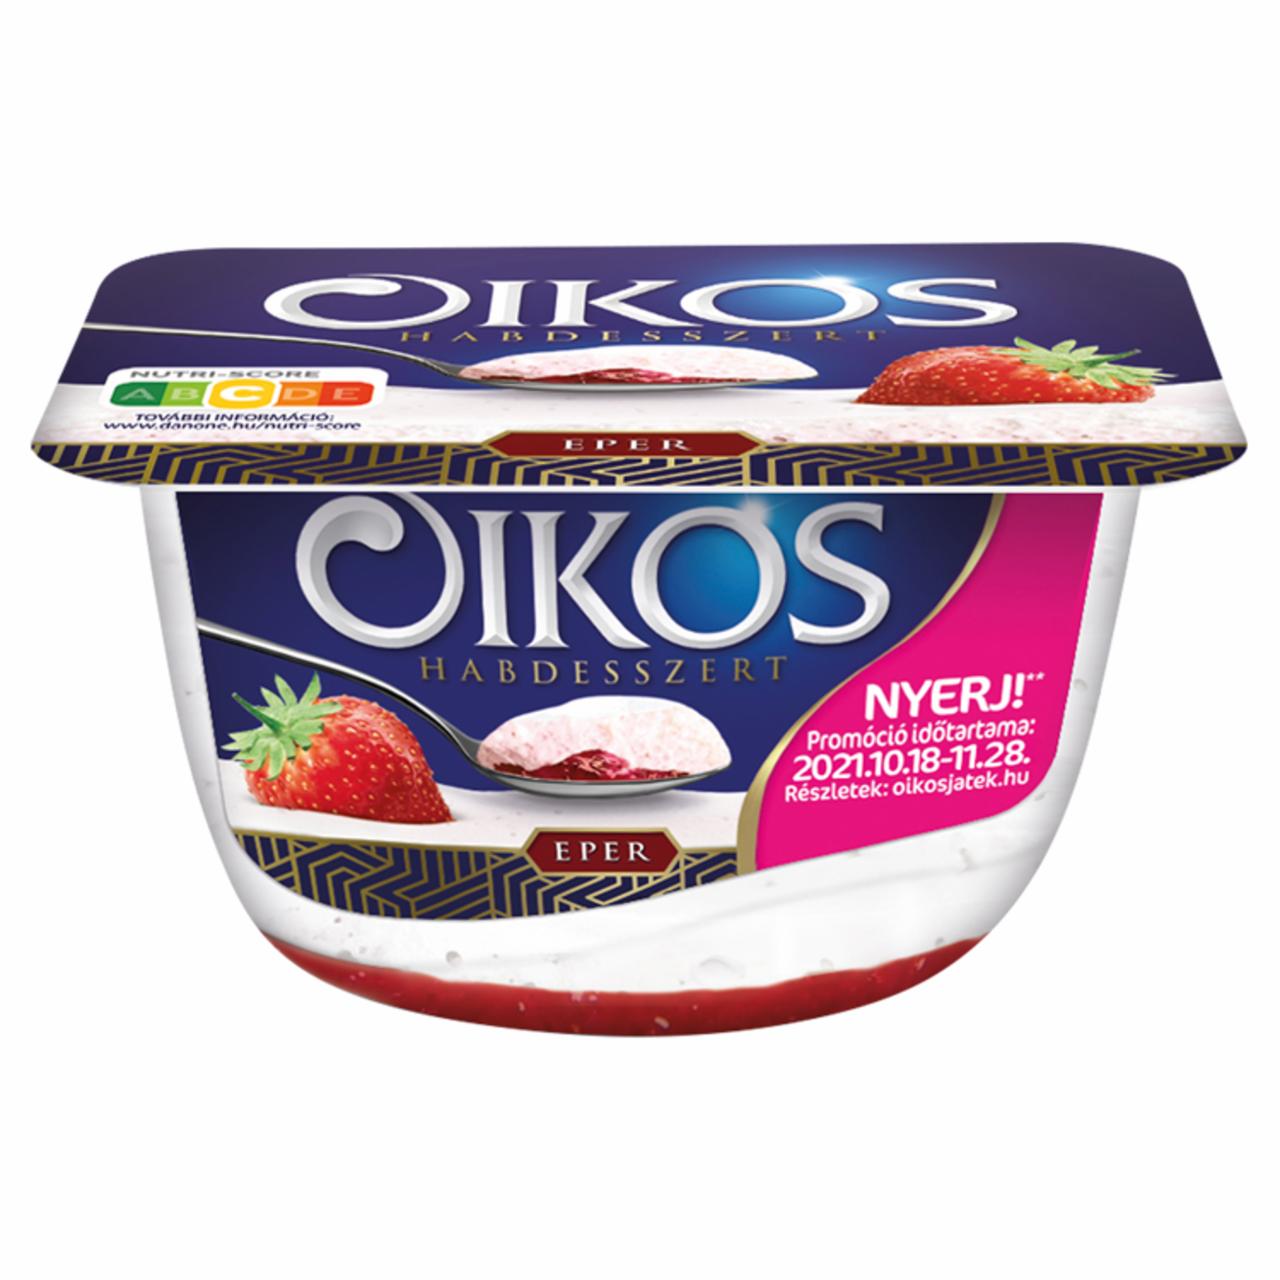 Képek - Danone Oikos Habdesszert habosított tejtermék epres öntettel 125 g